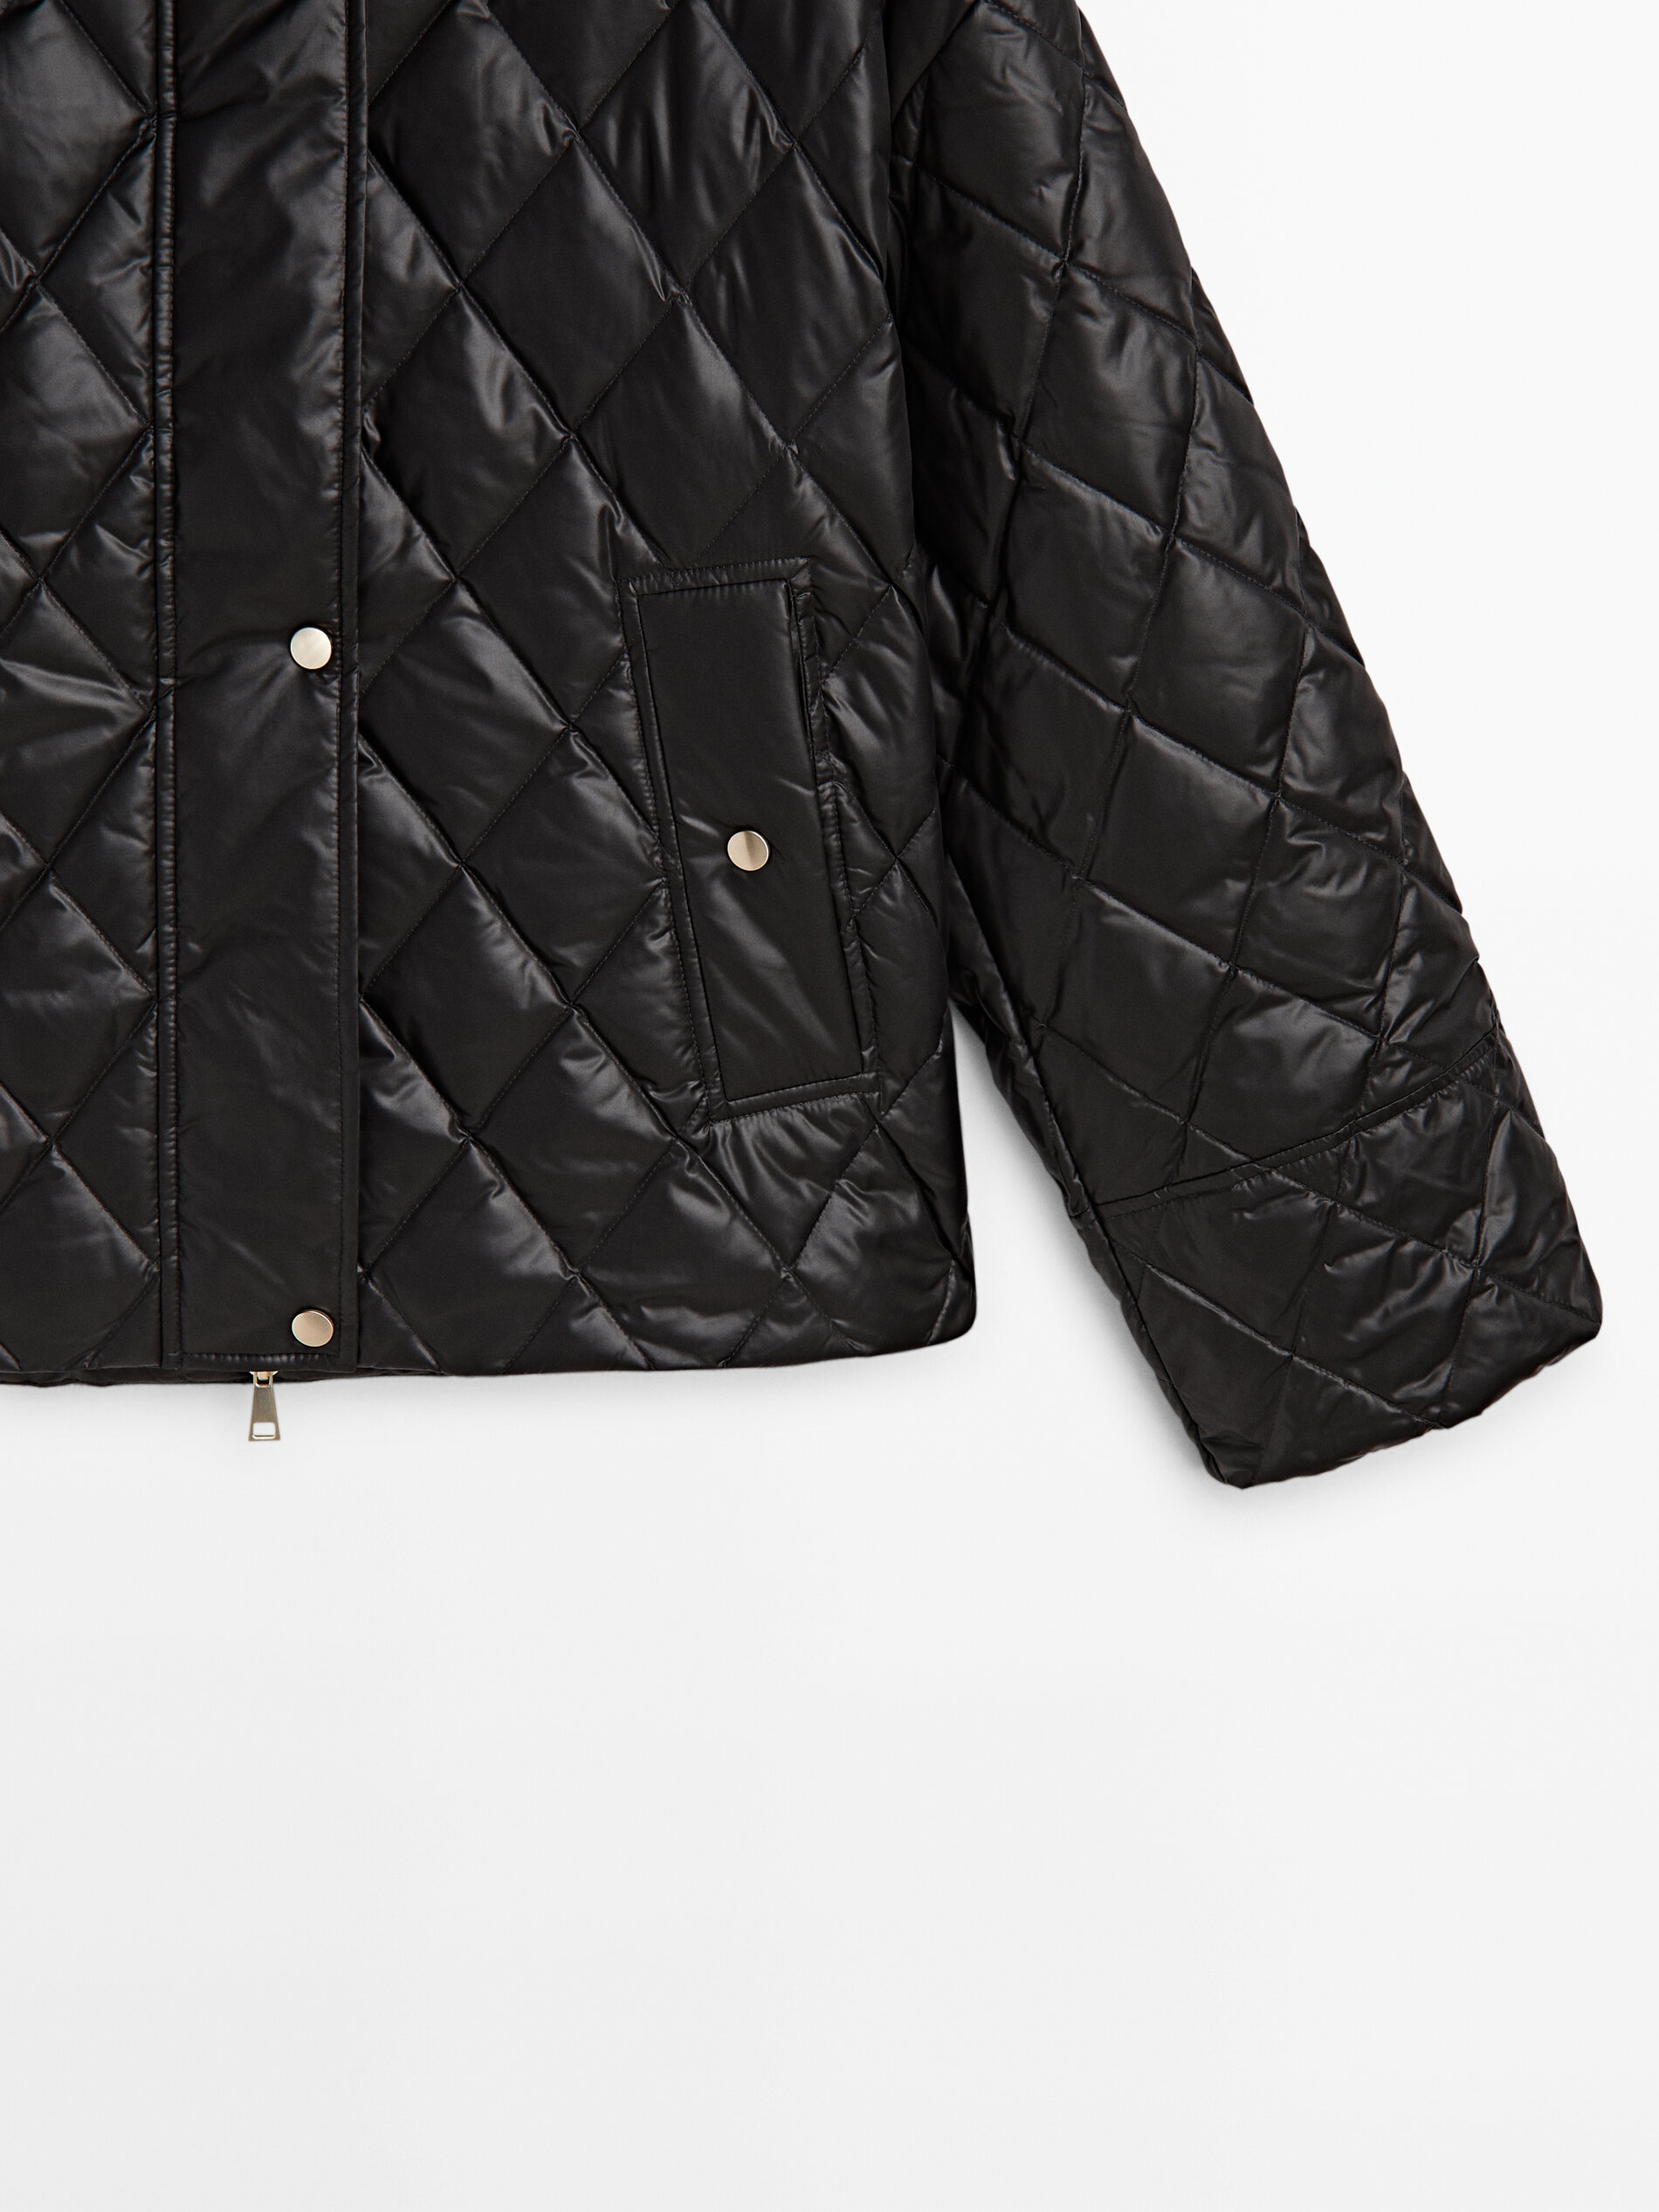 Buy Iconic Varsity Jacket with High Neck and Long Sleeves | Splash UAE